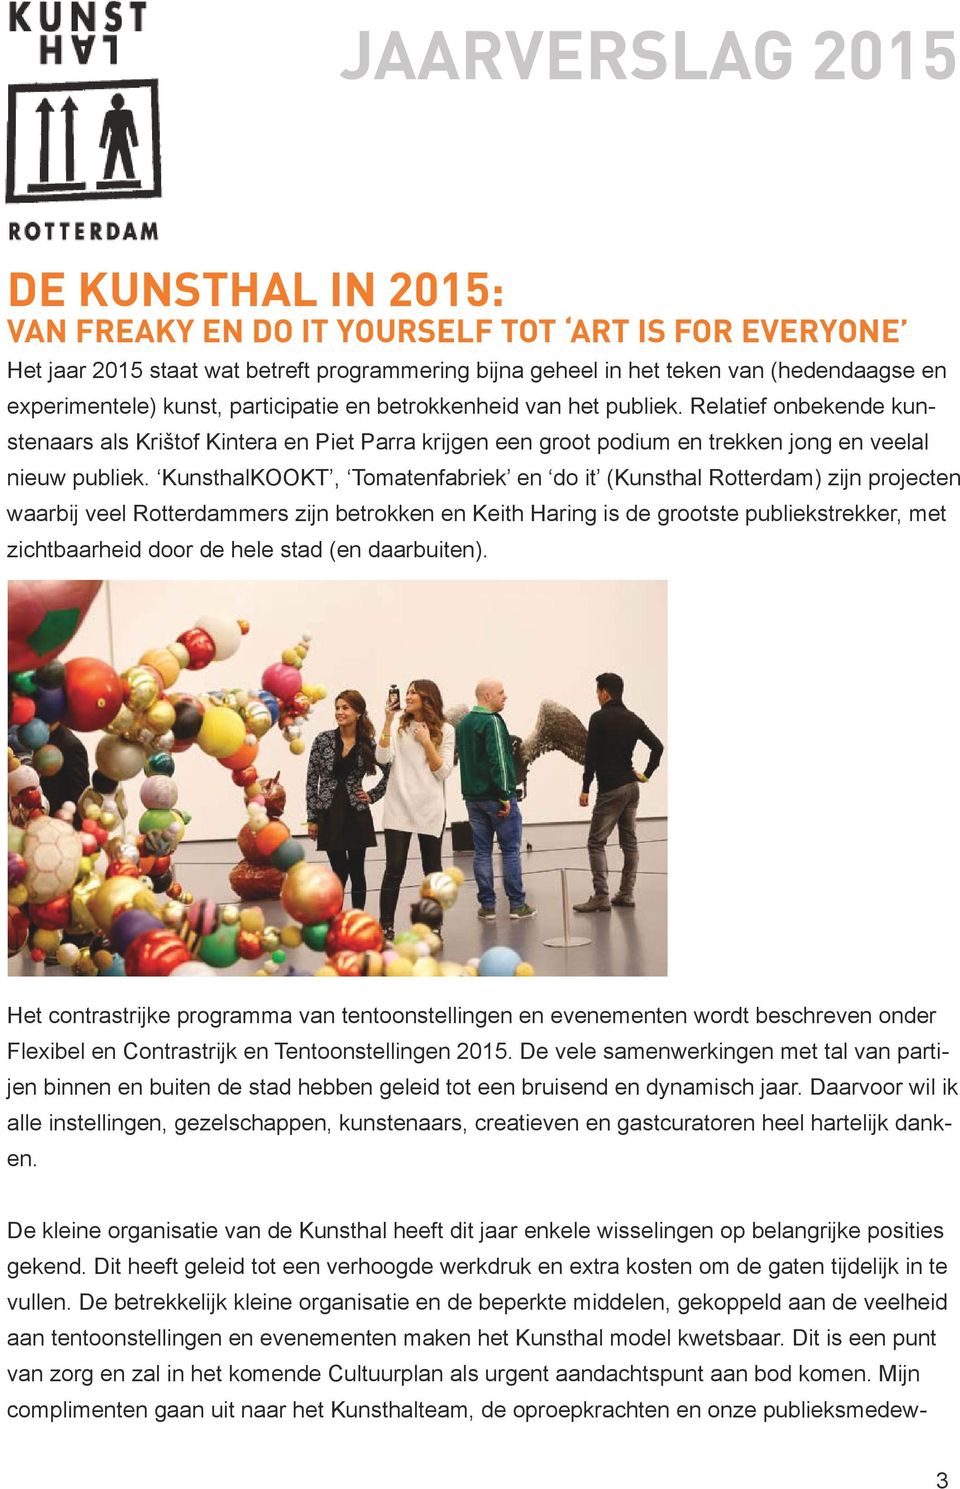 KunsthalKOOKT, Tomatenfabriek en do it (Kunsthal Rotterdam) zijn projecten waarbij veel Rotterdammers zijn betrokken en Keith Haring is de grootste publiekstrekker, met zichtbaarheid door de hele